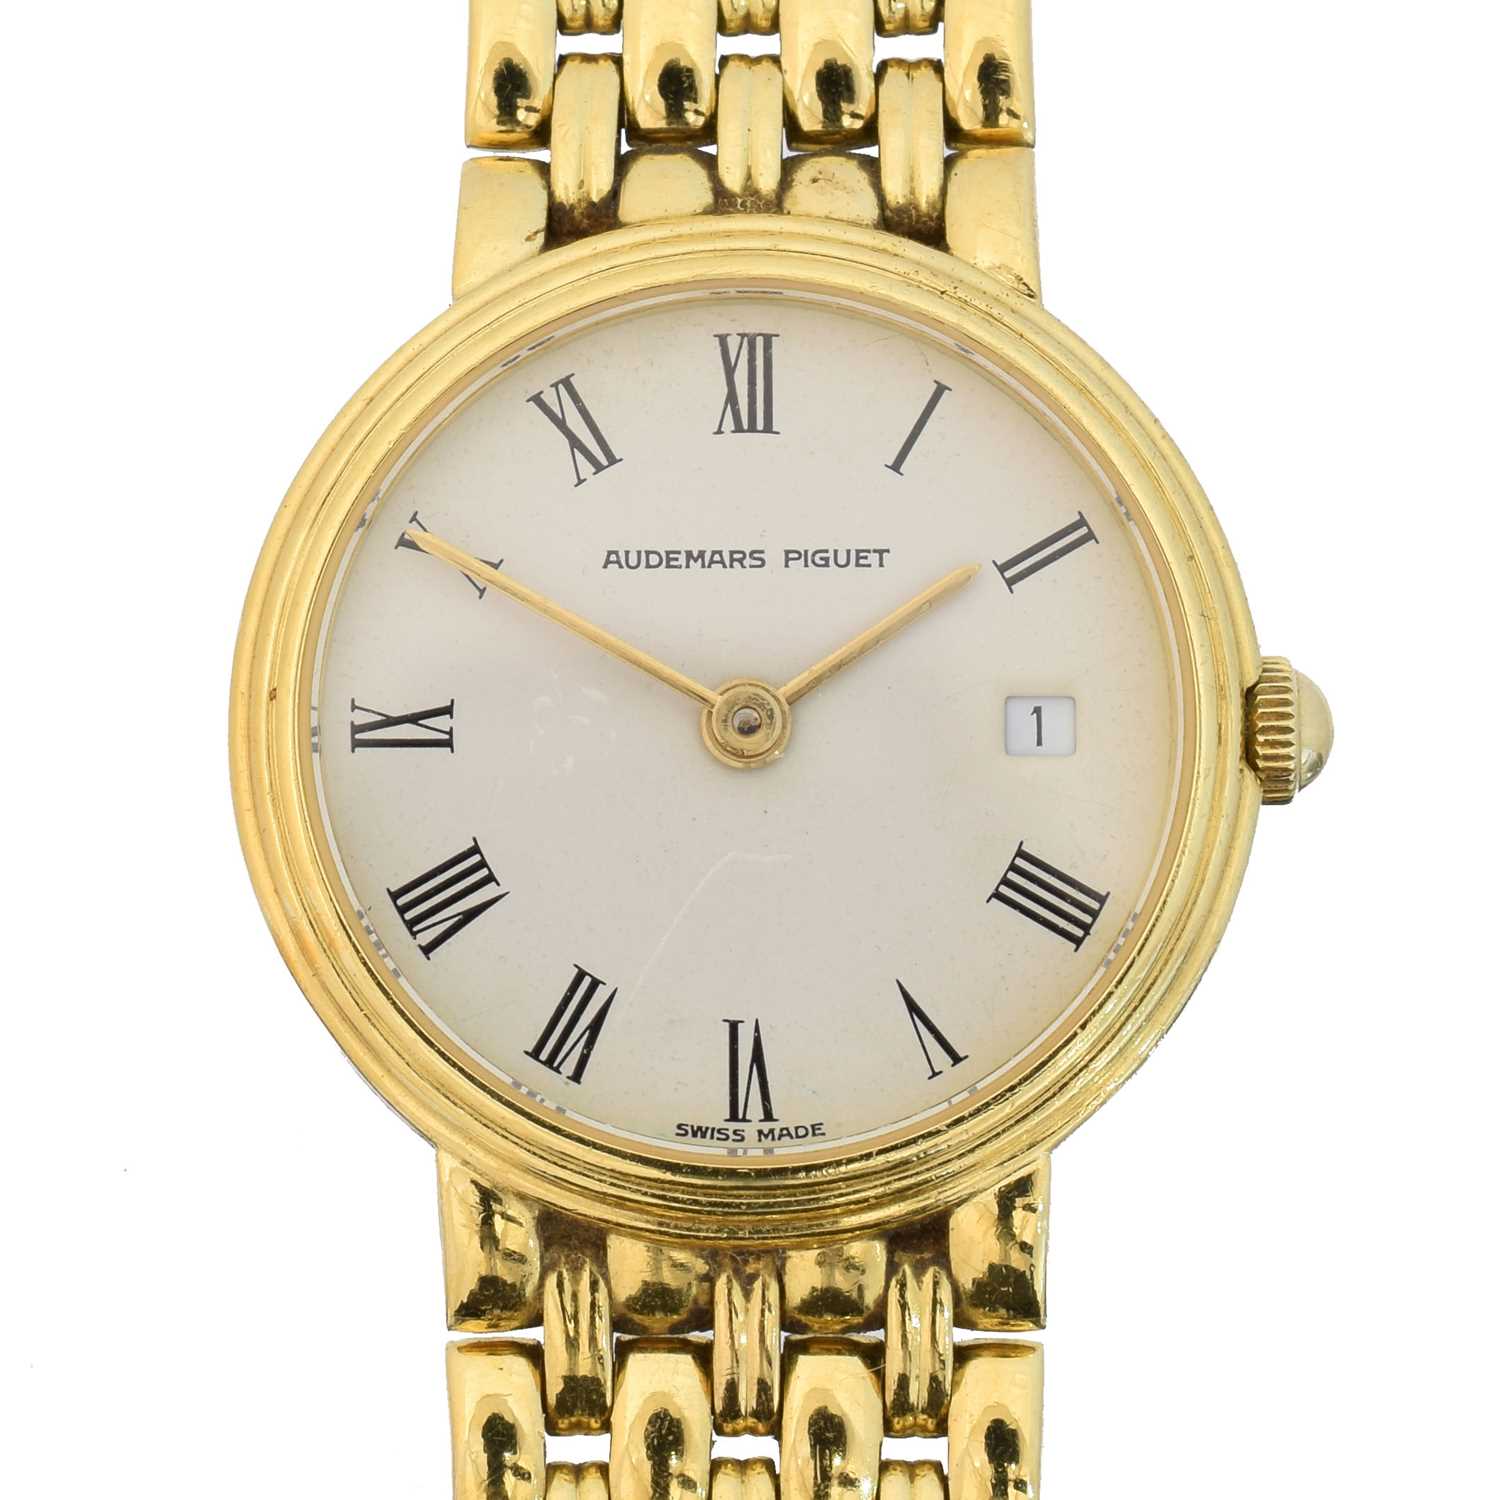 Lot An 18ct gold Audemars Piguet quartz wristwatch